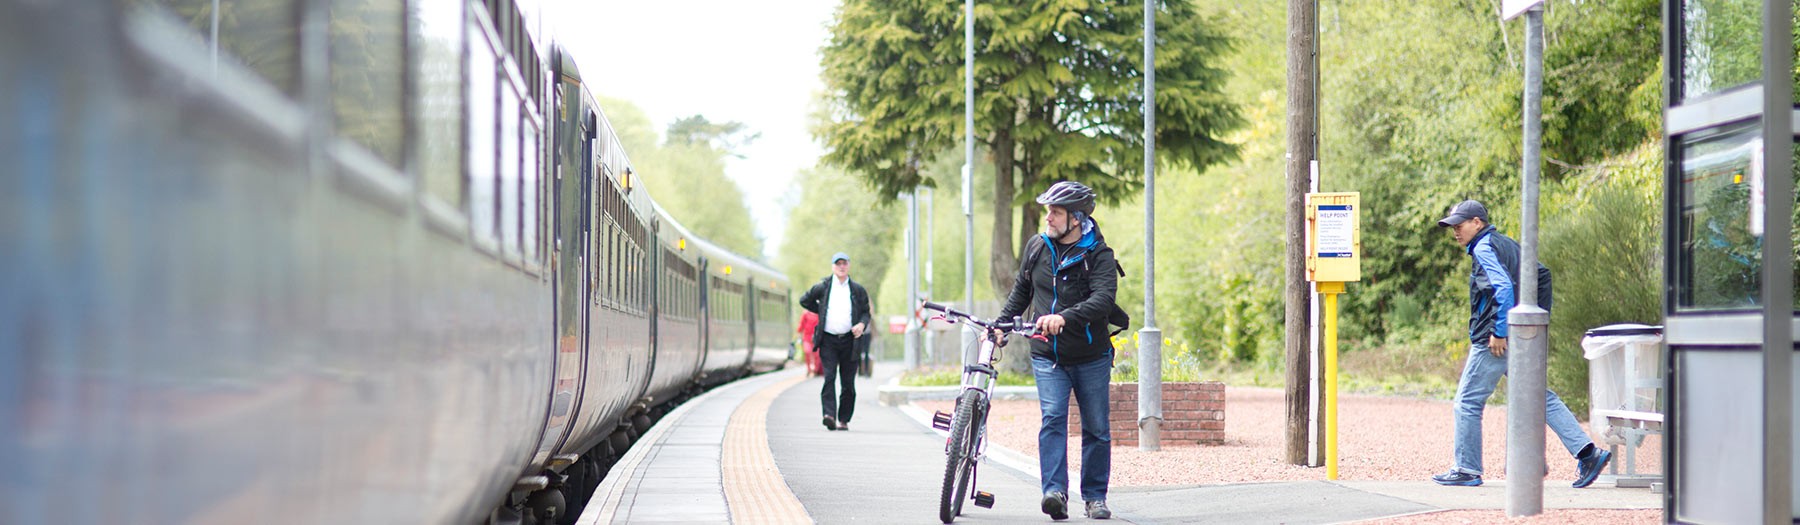 man wheeling bike on station platform